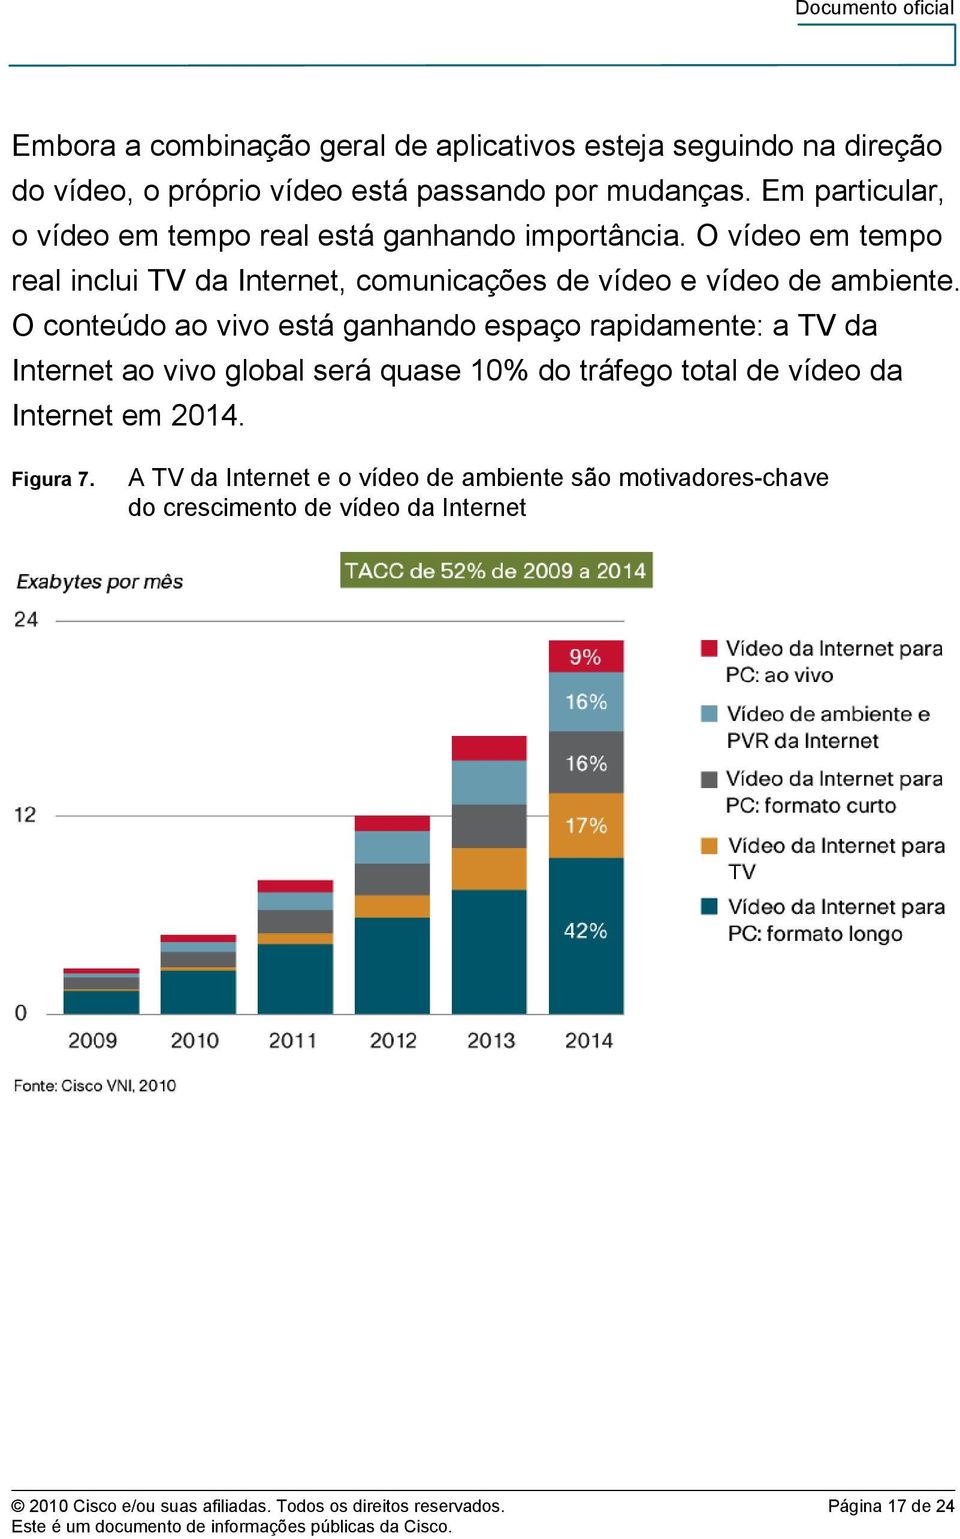 O conteúdo ao vivo está ganhando espaço rapidamente: a TV da Internet ao vivo global será quase 10% do tráfego total de vídeo da Internet em 2014.